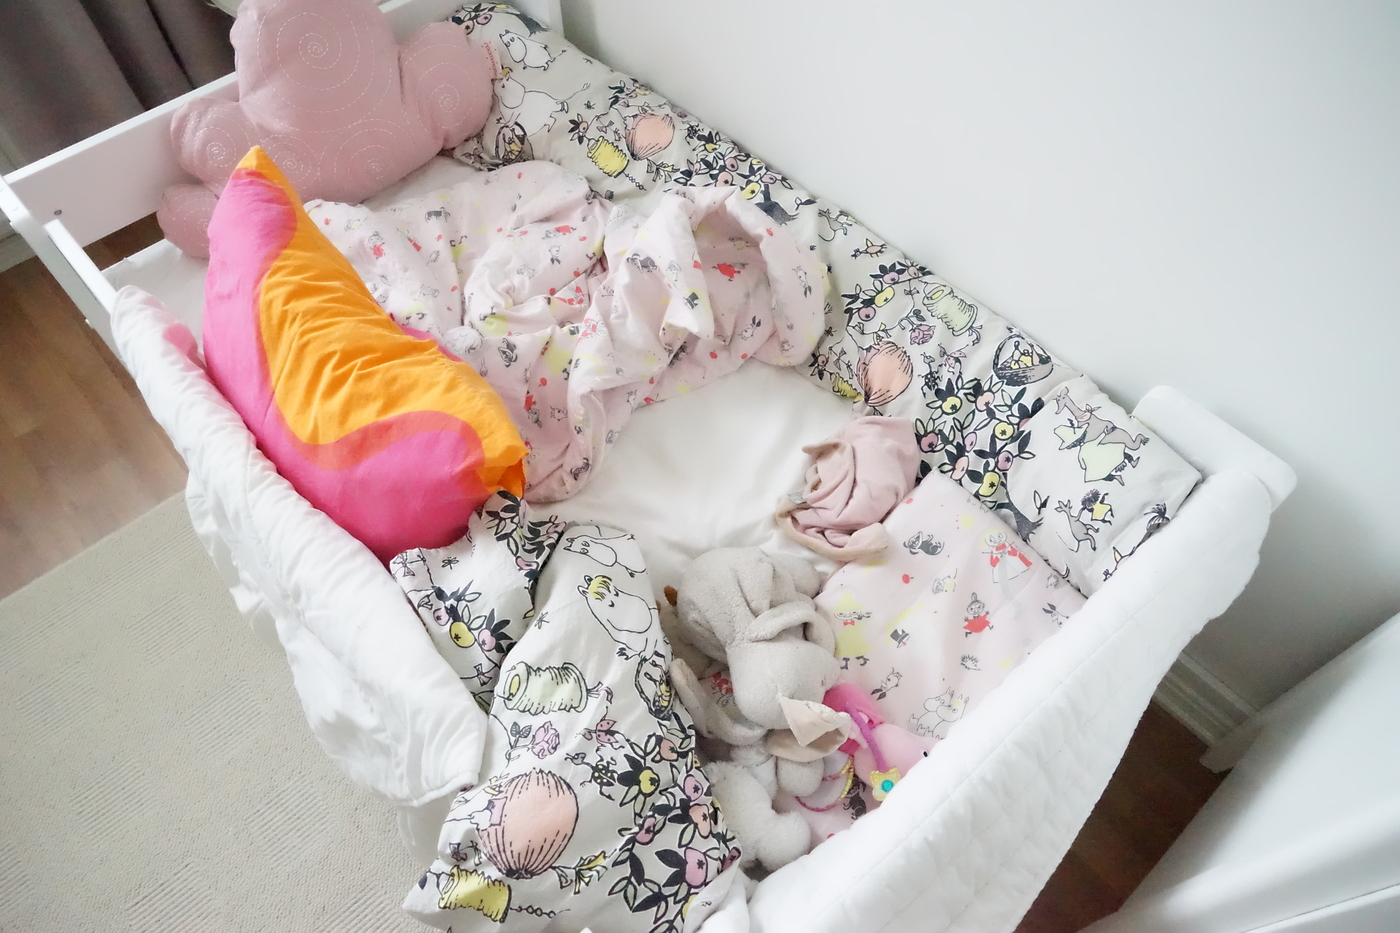 Virheestä opittua – eli miten meillä opittiin nukkumaan lastensängyssä